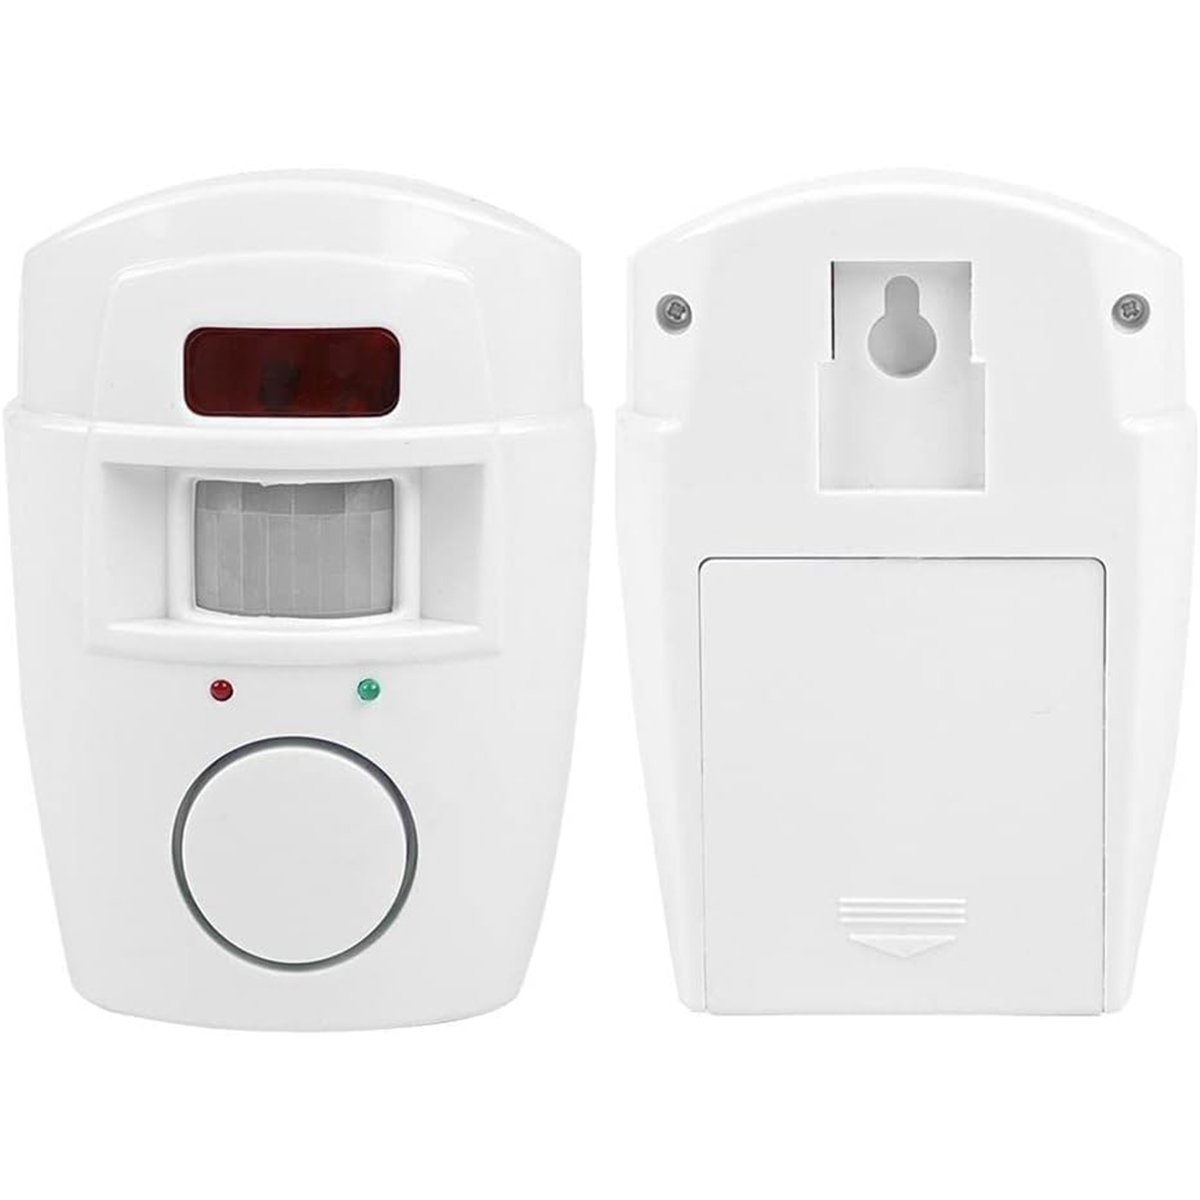 Alarme sem Fio com Controles Sensor Movimento Sirene Som Alto 105 Dcb Detecta Presença Segurança com - 3